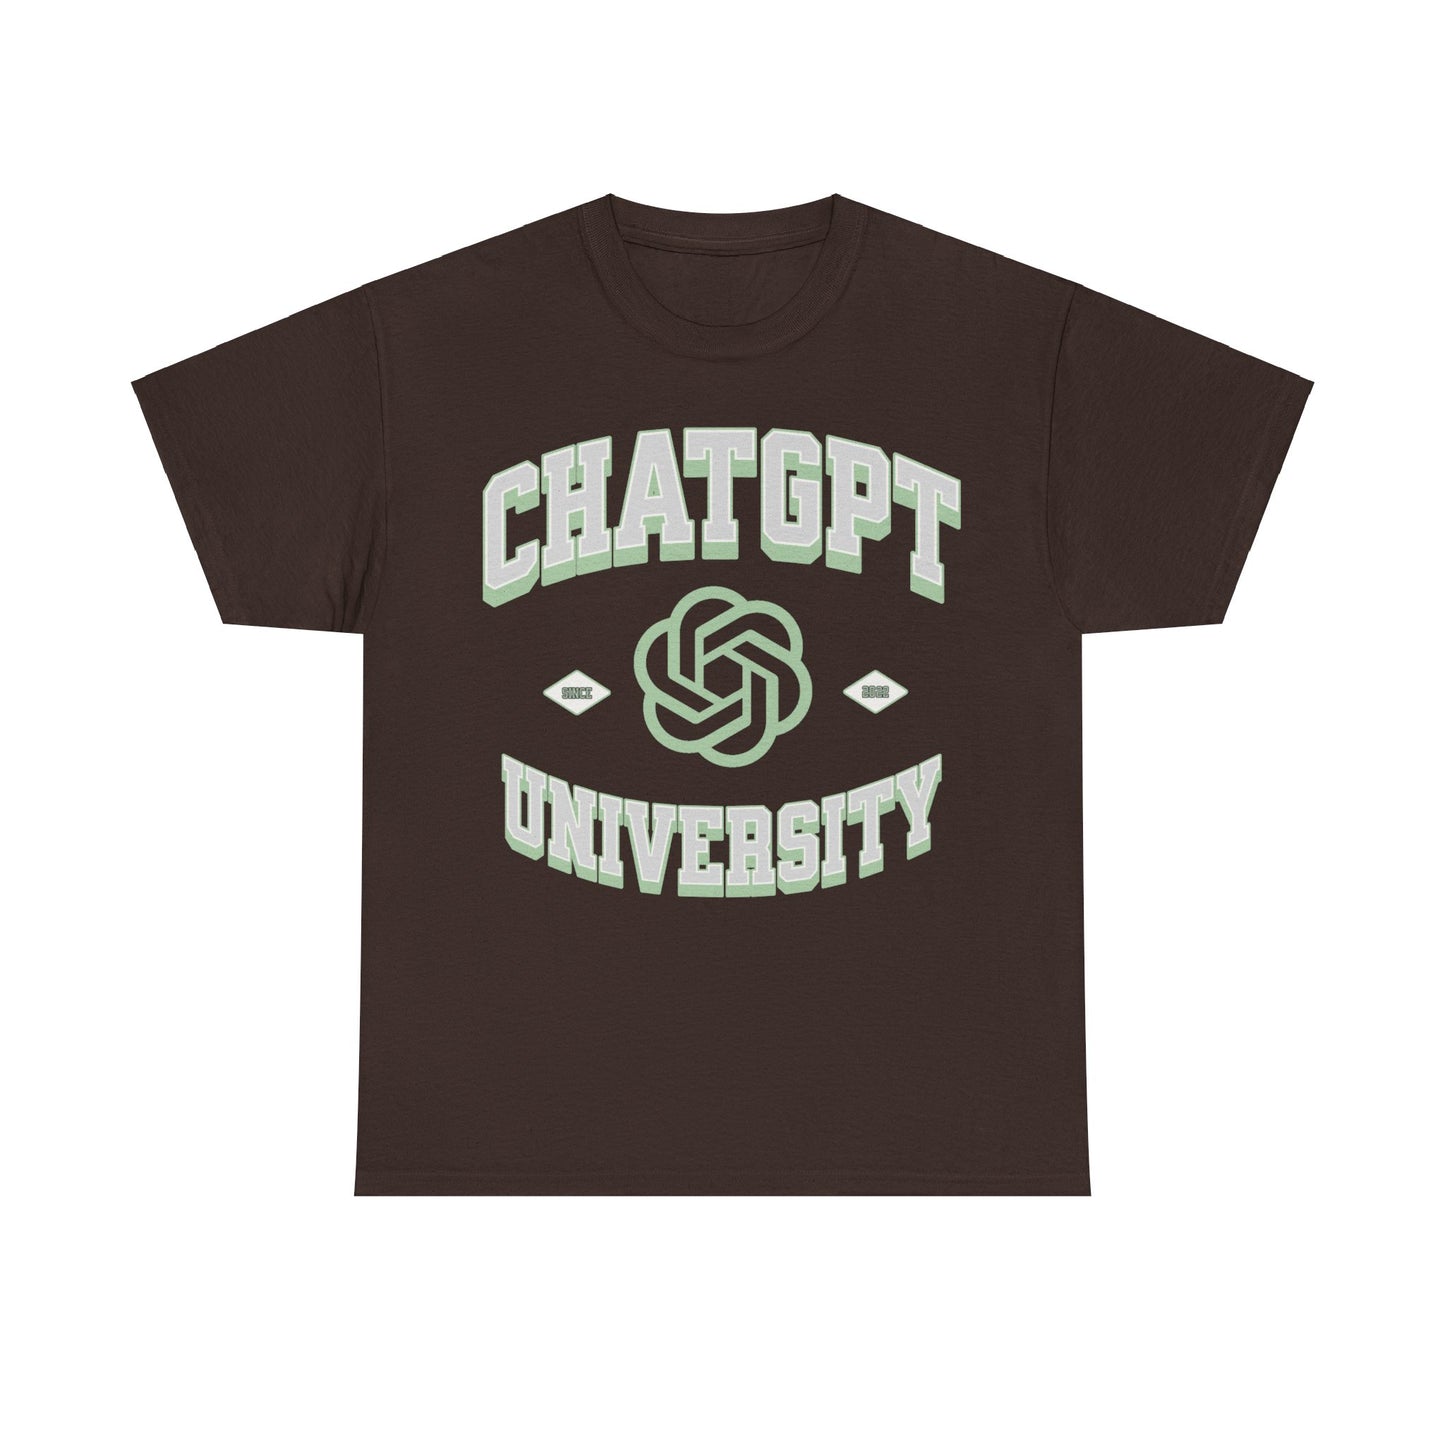 Entdecken Sie das einzigartige GPT Universität T-Shirt mit der kultigen "ChatGPT" Aufschrift - das perfekte Geschenk für KI-Enthusiasten und Tech-Nerds. Dieses hochwertige Shirt ist ein Muss für alle, die die revolutionäre Welt der künstlichen Intelligenz und generativen KI-Modelle wie ChatGPT feiern möchten. 